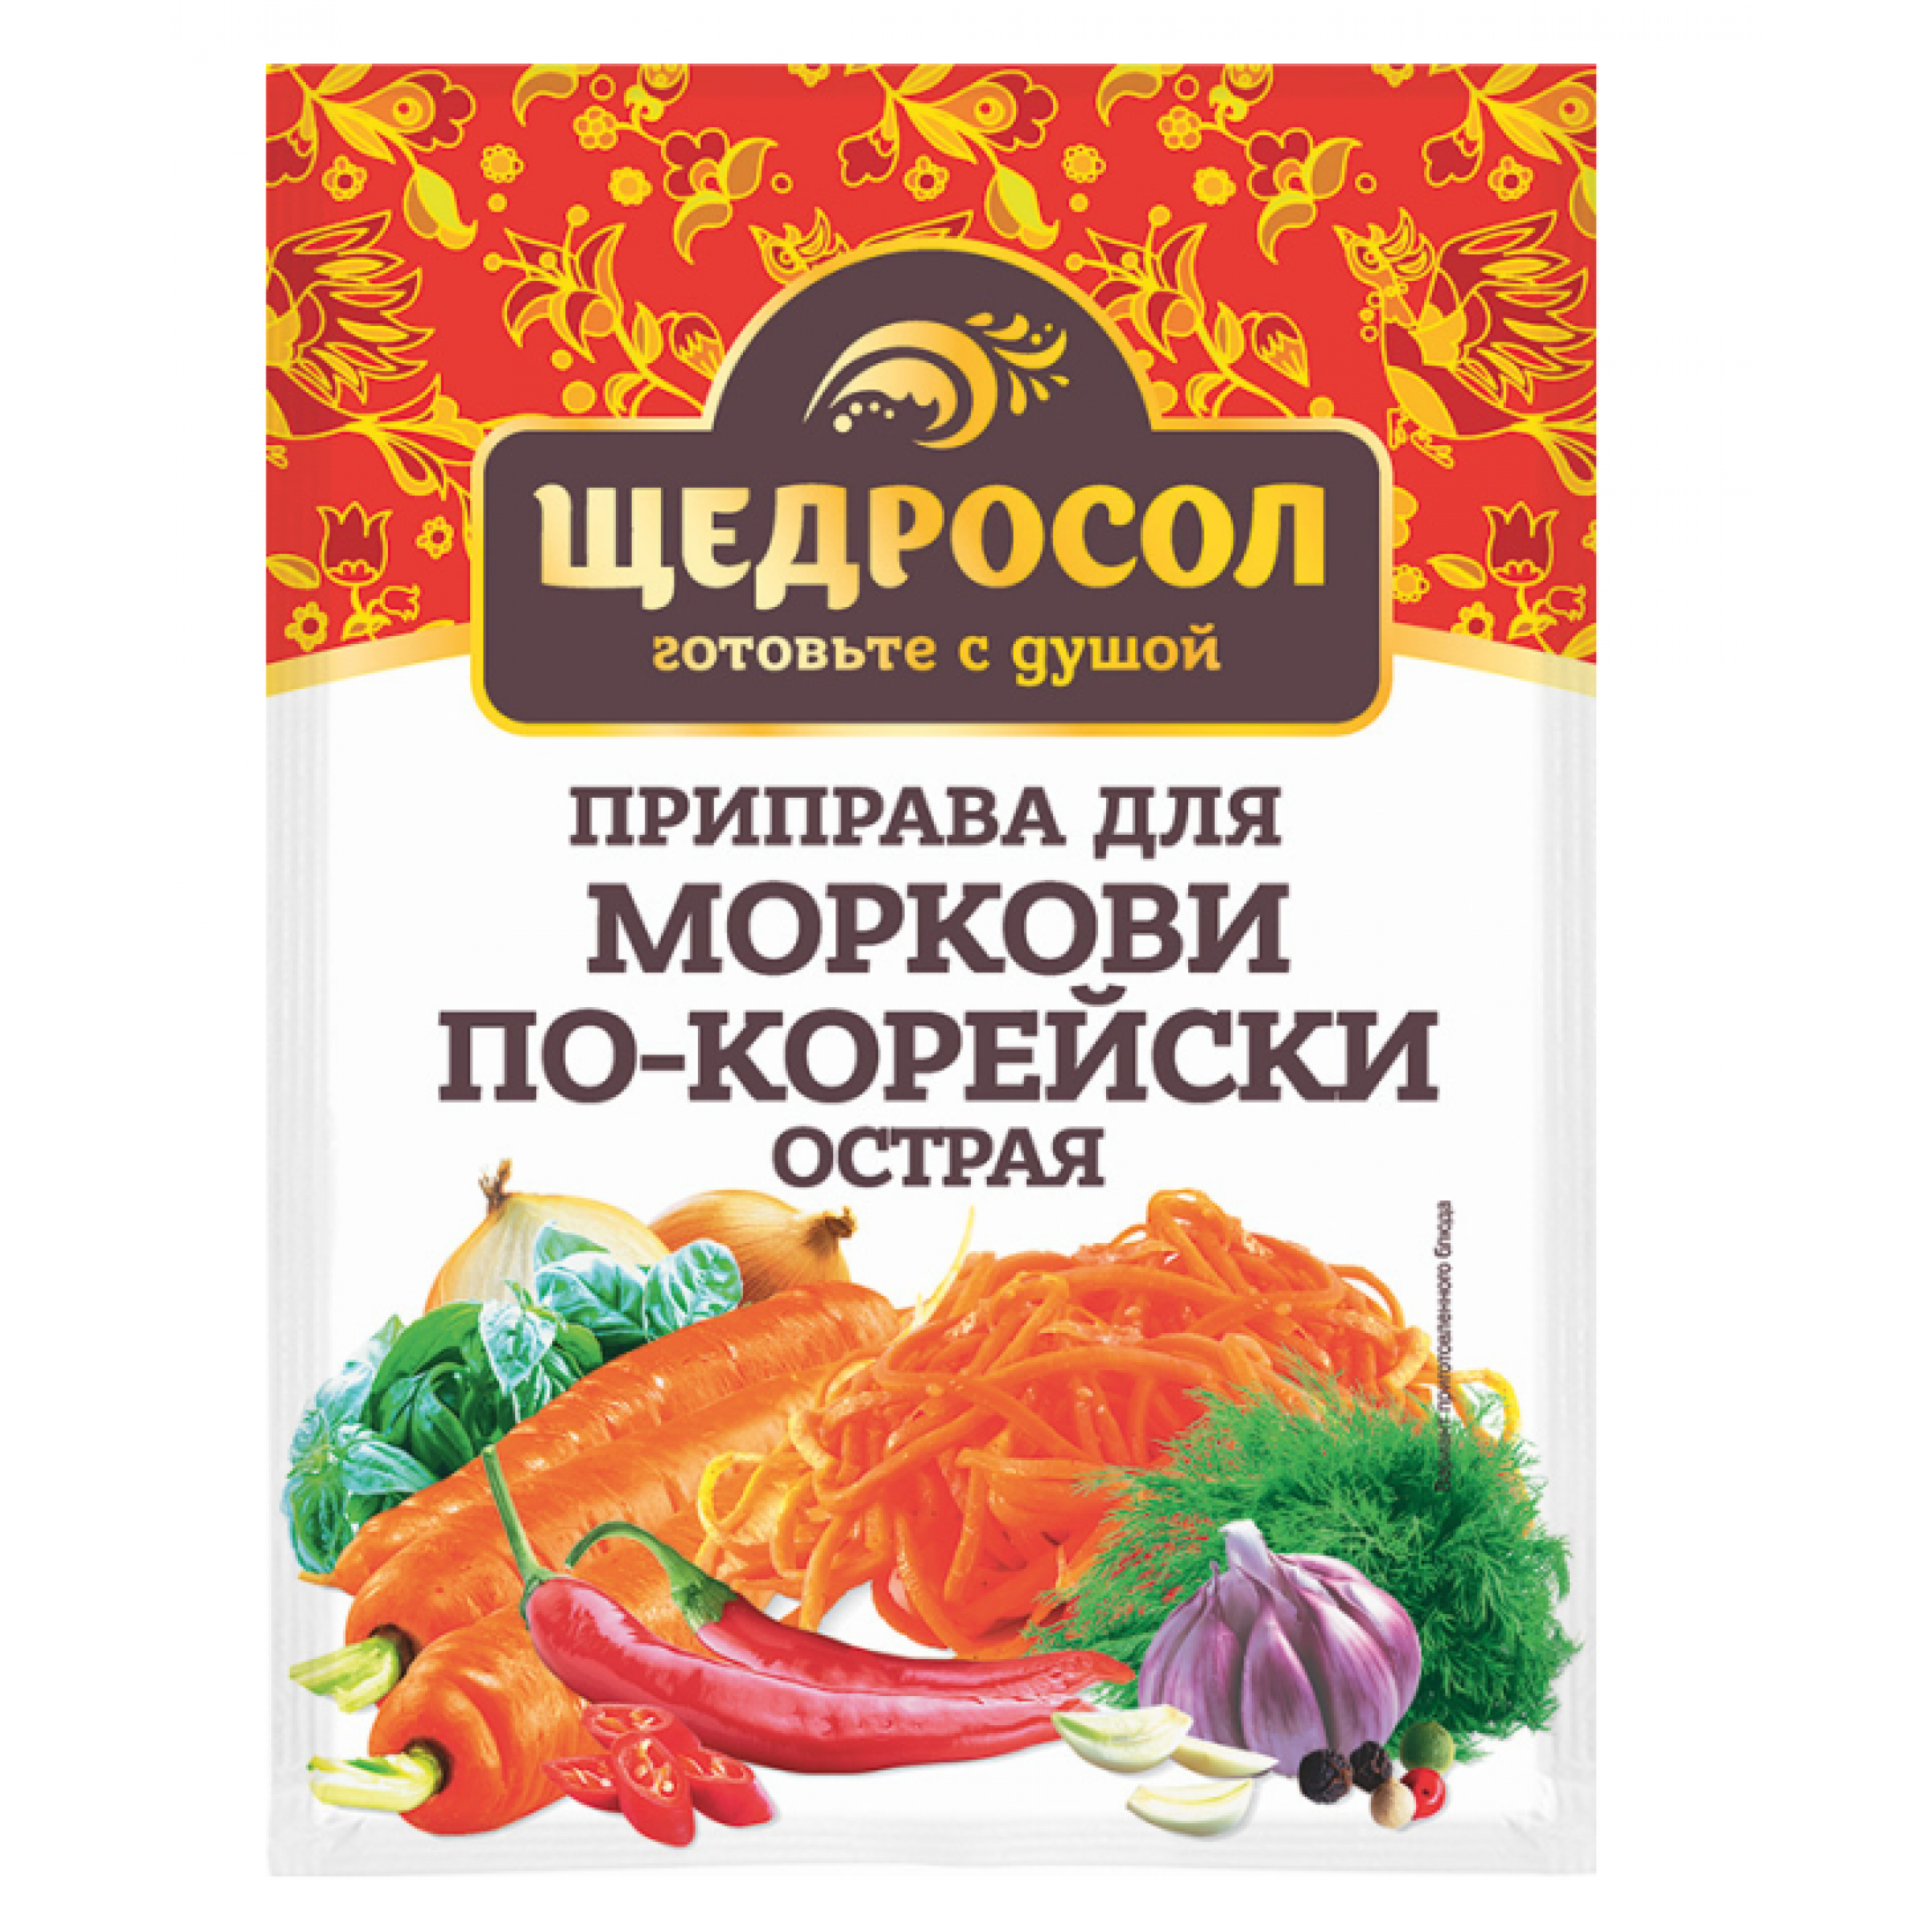 Приправа Для моркови по-корейски острая Щедросол 15 г